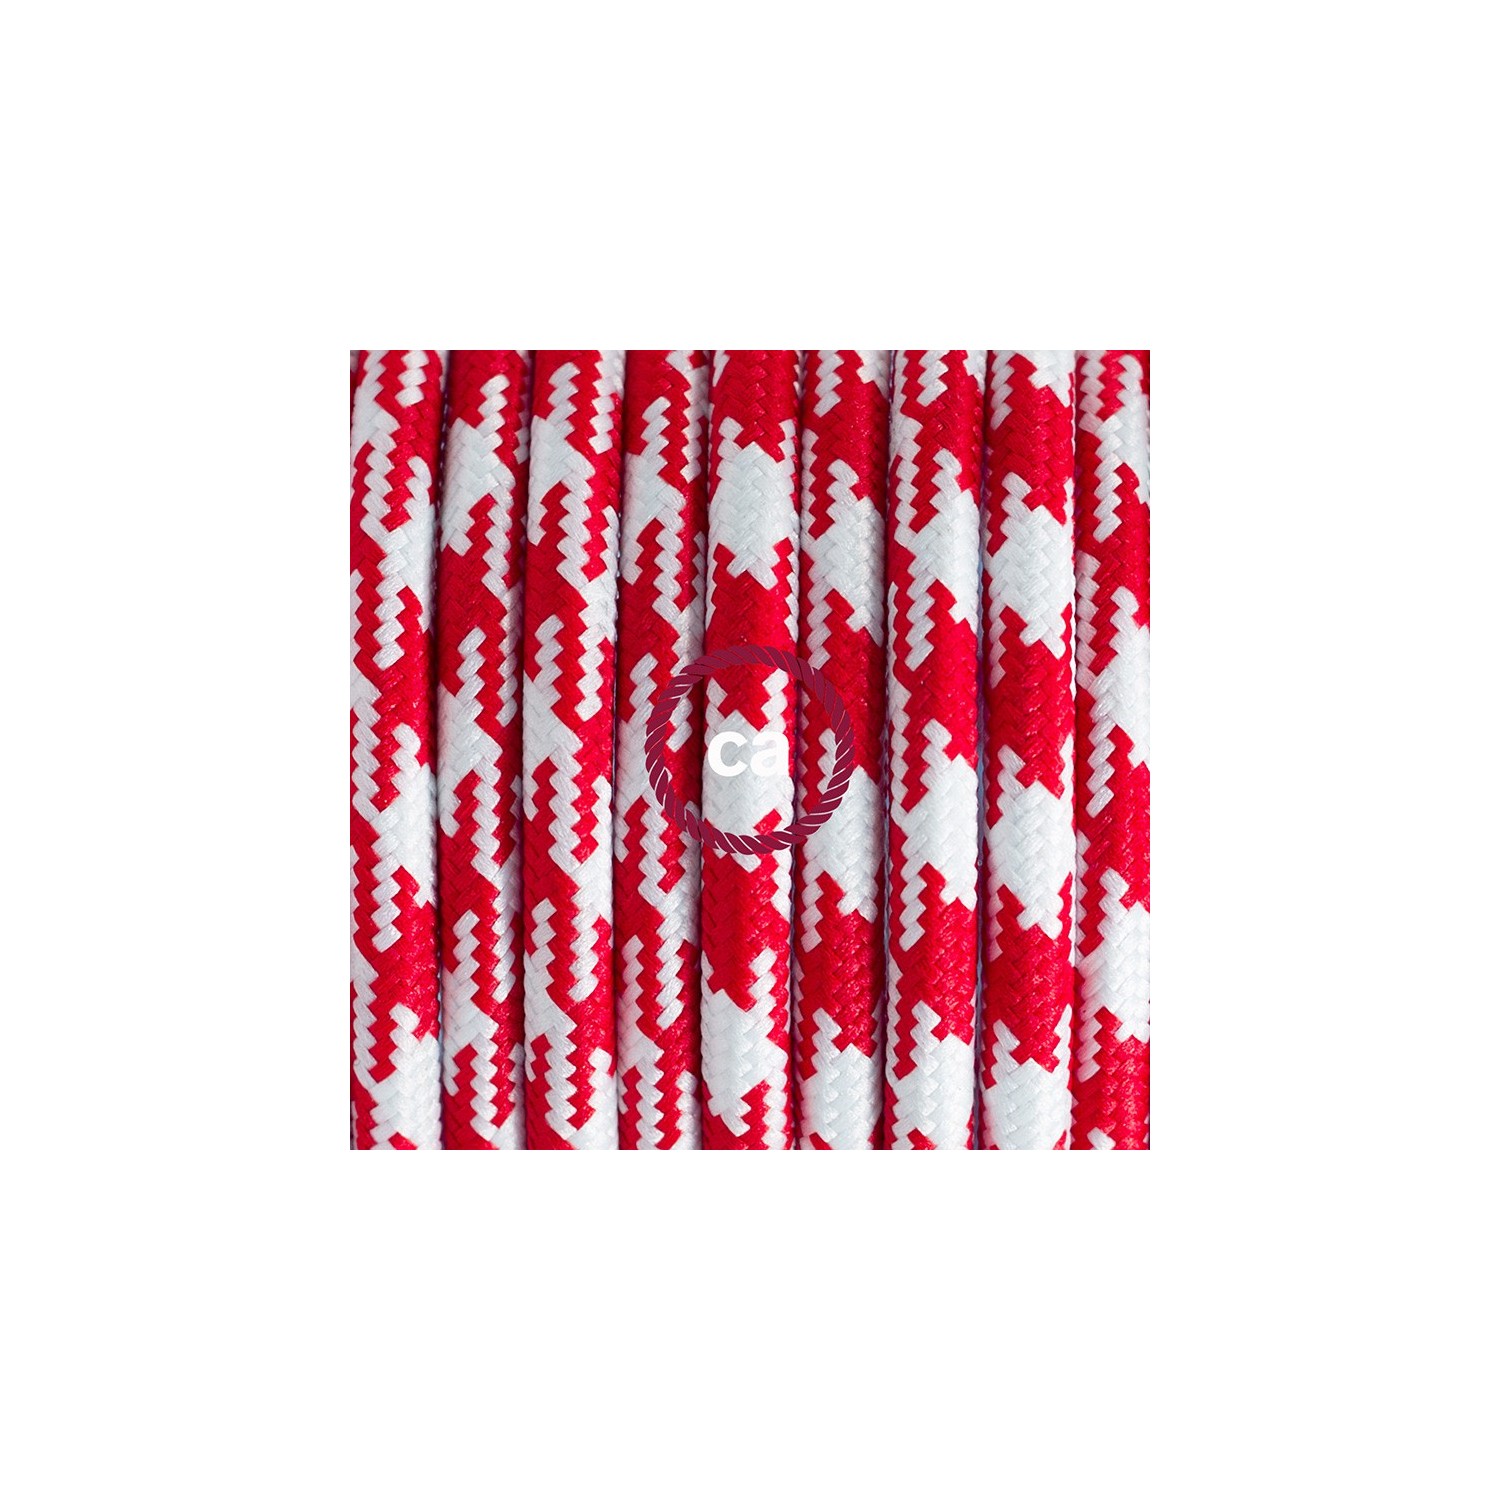 Stehleuchte Anschlussleitung RP09 Bifarbig Weiß Rot Seideneffekt 3 m. Wählen Sie aus drei Farben bei Schalter und Stecke.